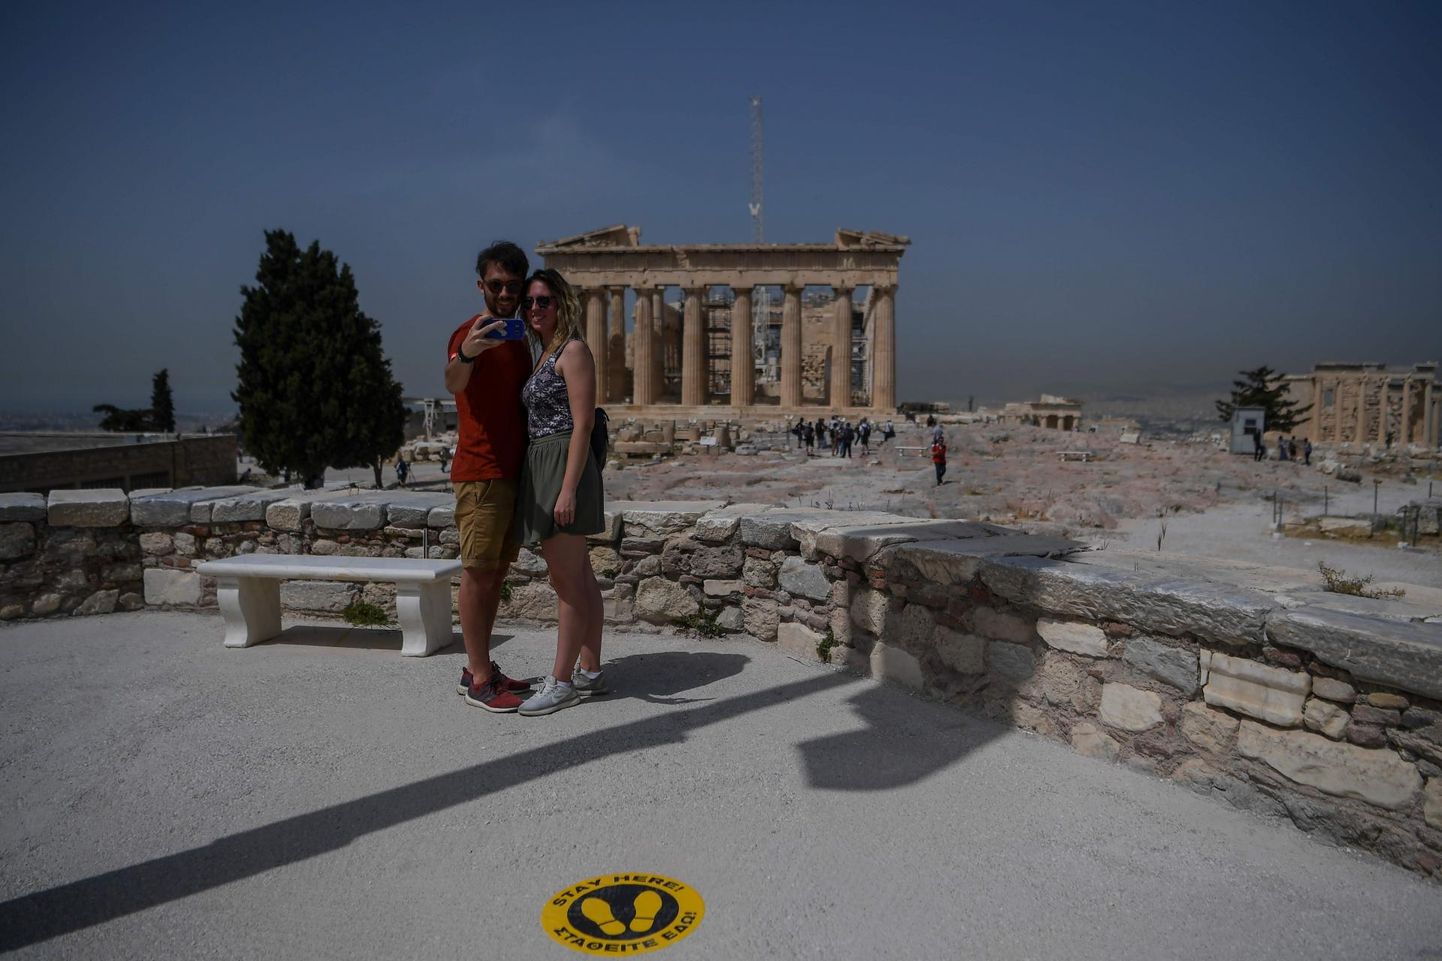 Kreeka majandus sõltub suuresti turismist. Paarike tühja Ateena akropoli juures.